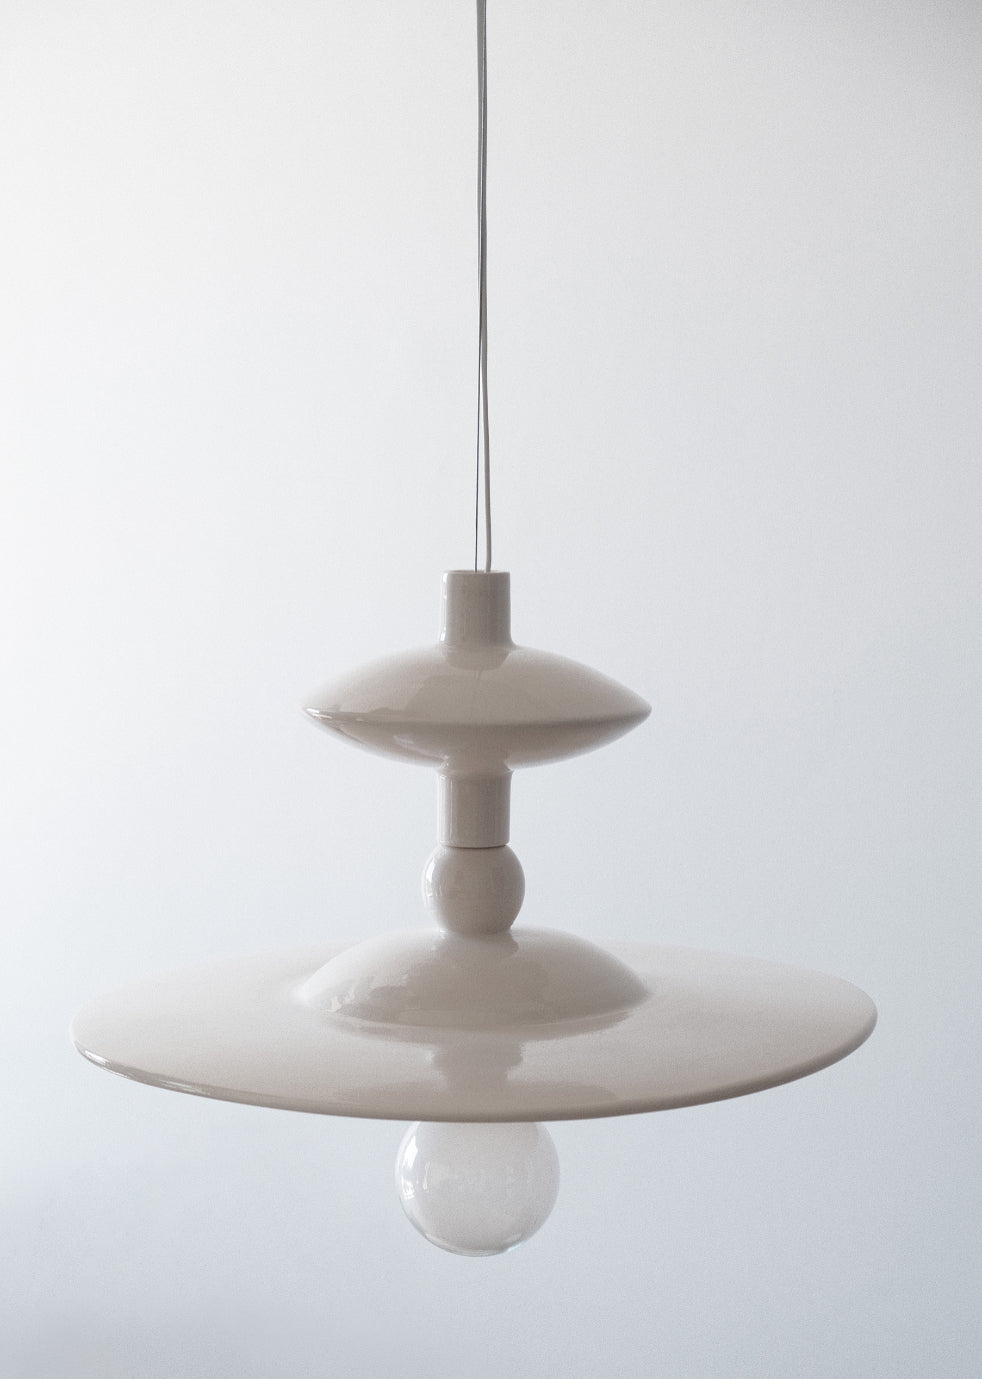 Lampe suspension Stella, en céramique tournée à la main en Italie. Création issue de la collection Libre comme... par Caroline Andréoni & Léa Ginac.